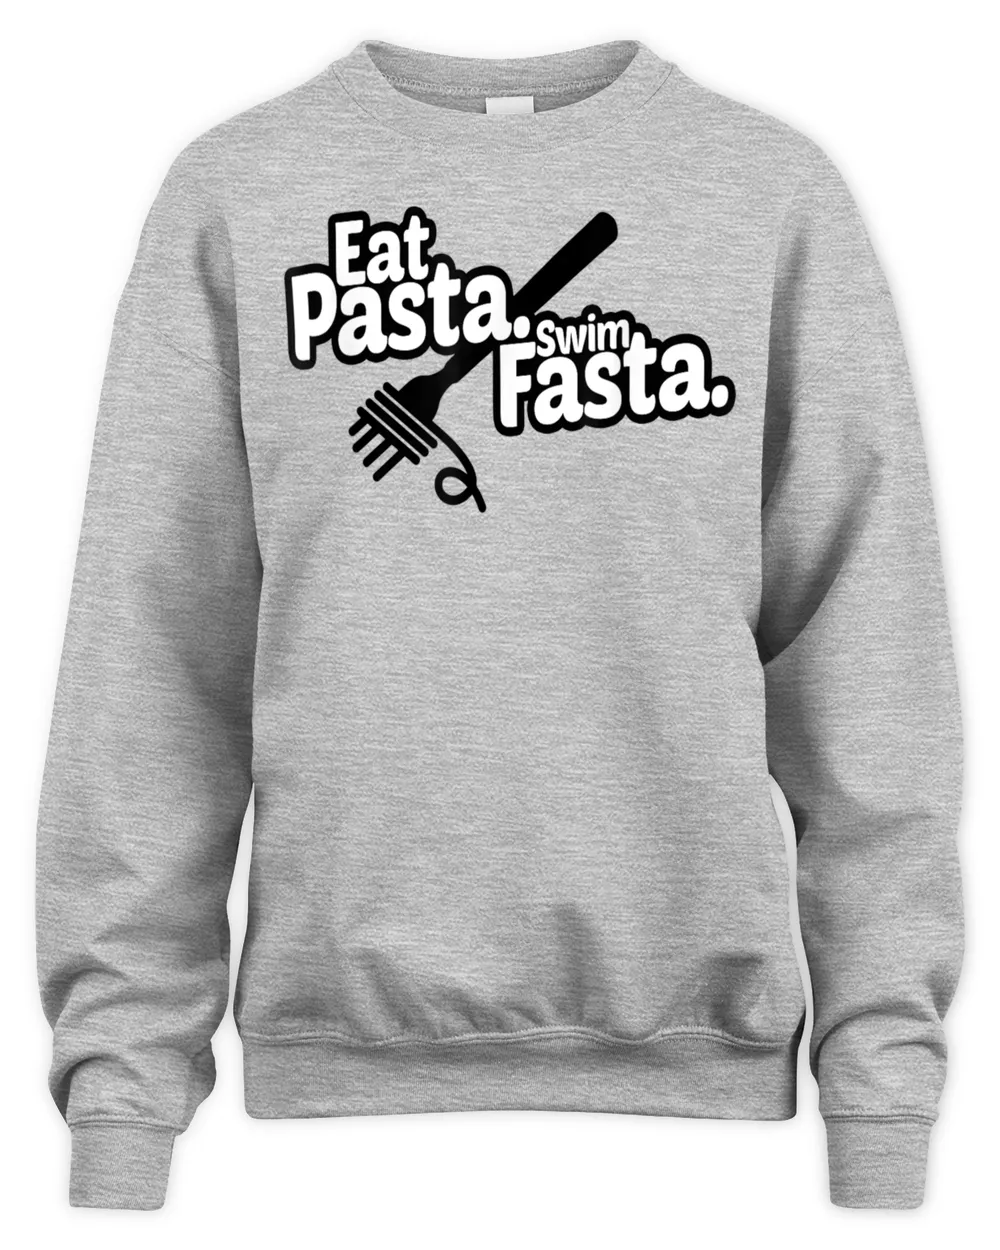 Eat Pasta swim fasta